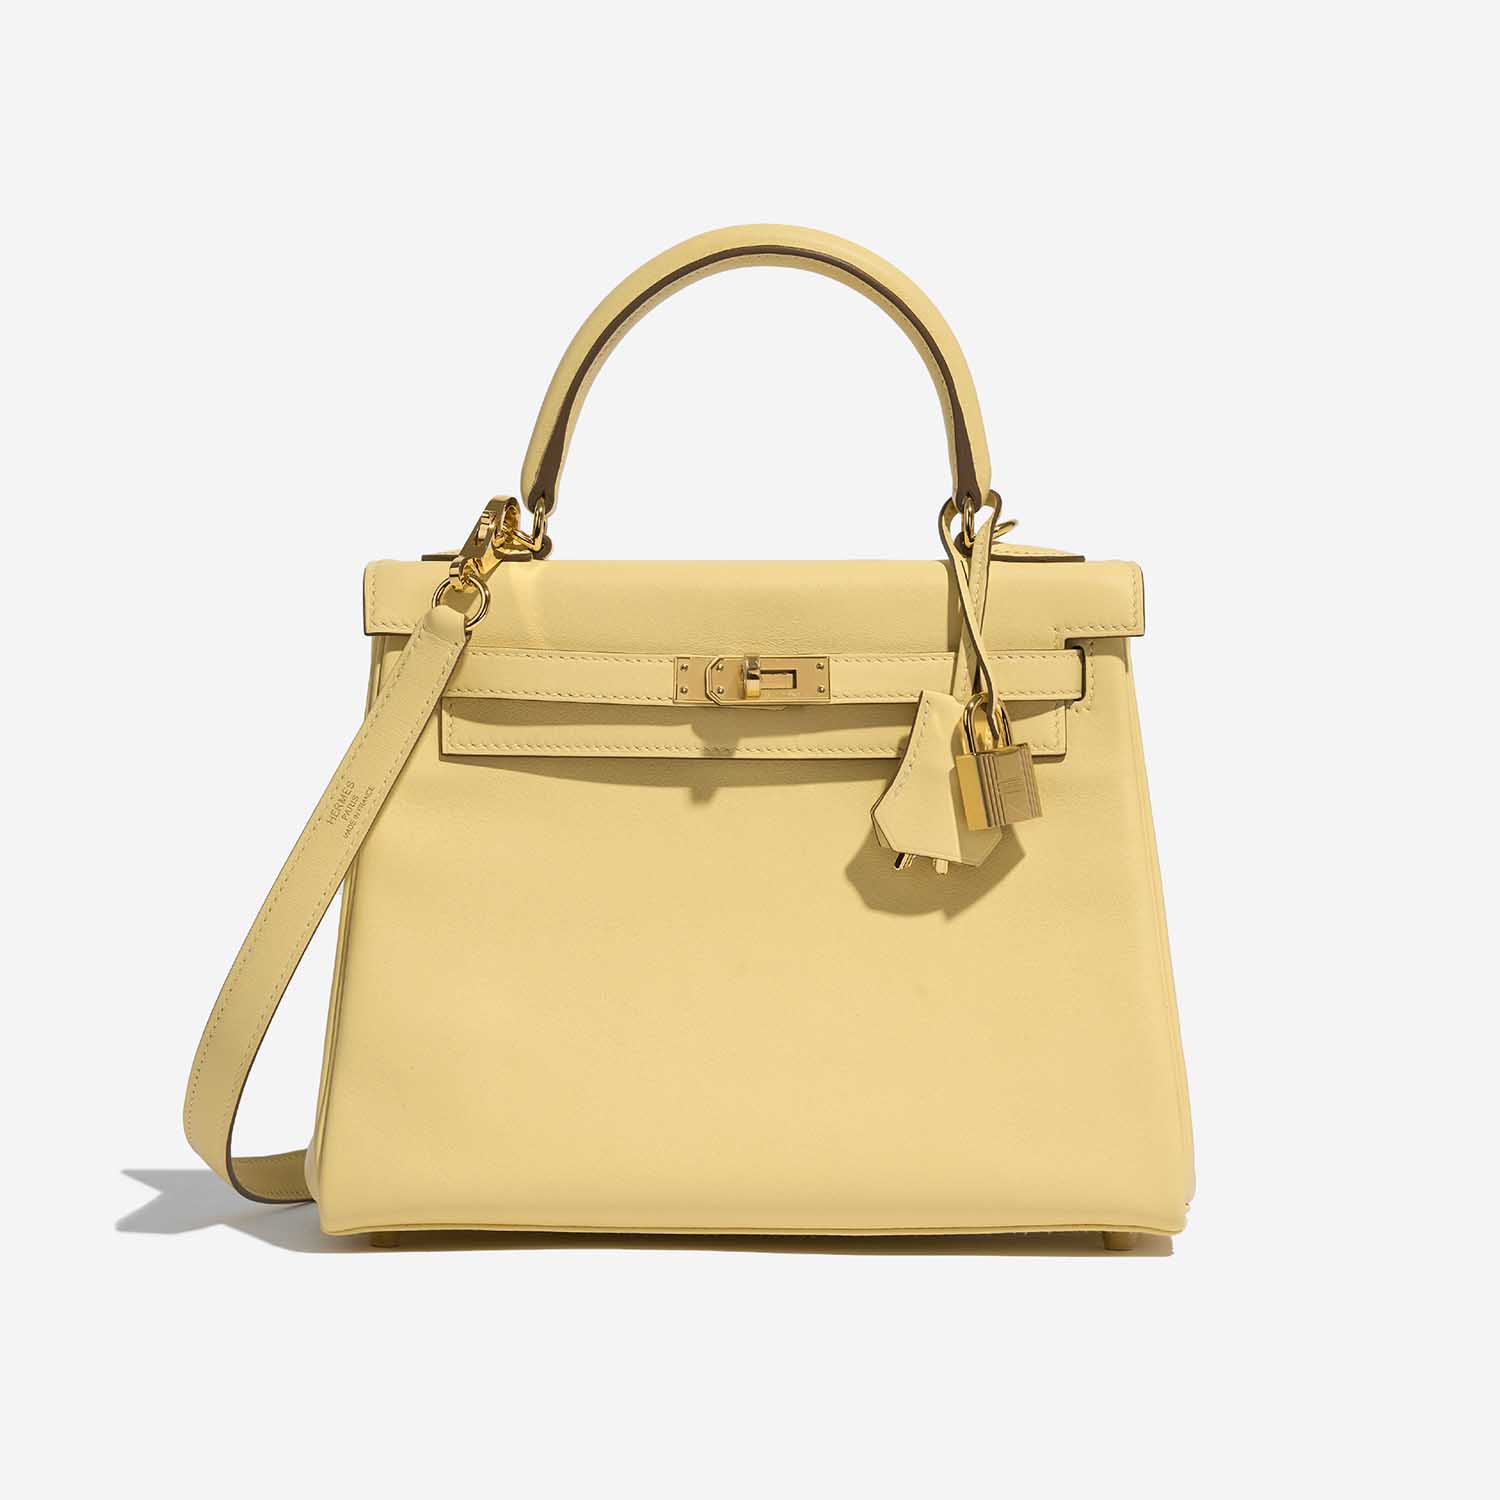 Sac Hermès d'occasion Kelly 25 Swift Jaune Poussin Yellow Front | Vendez votre sac de créateur sur Saclab.com